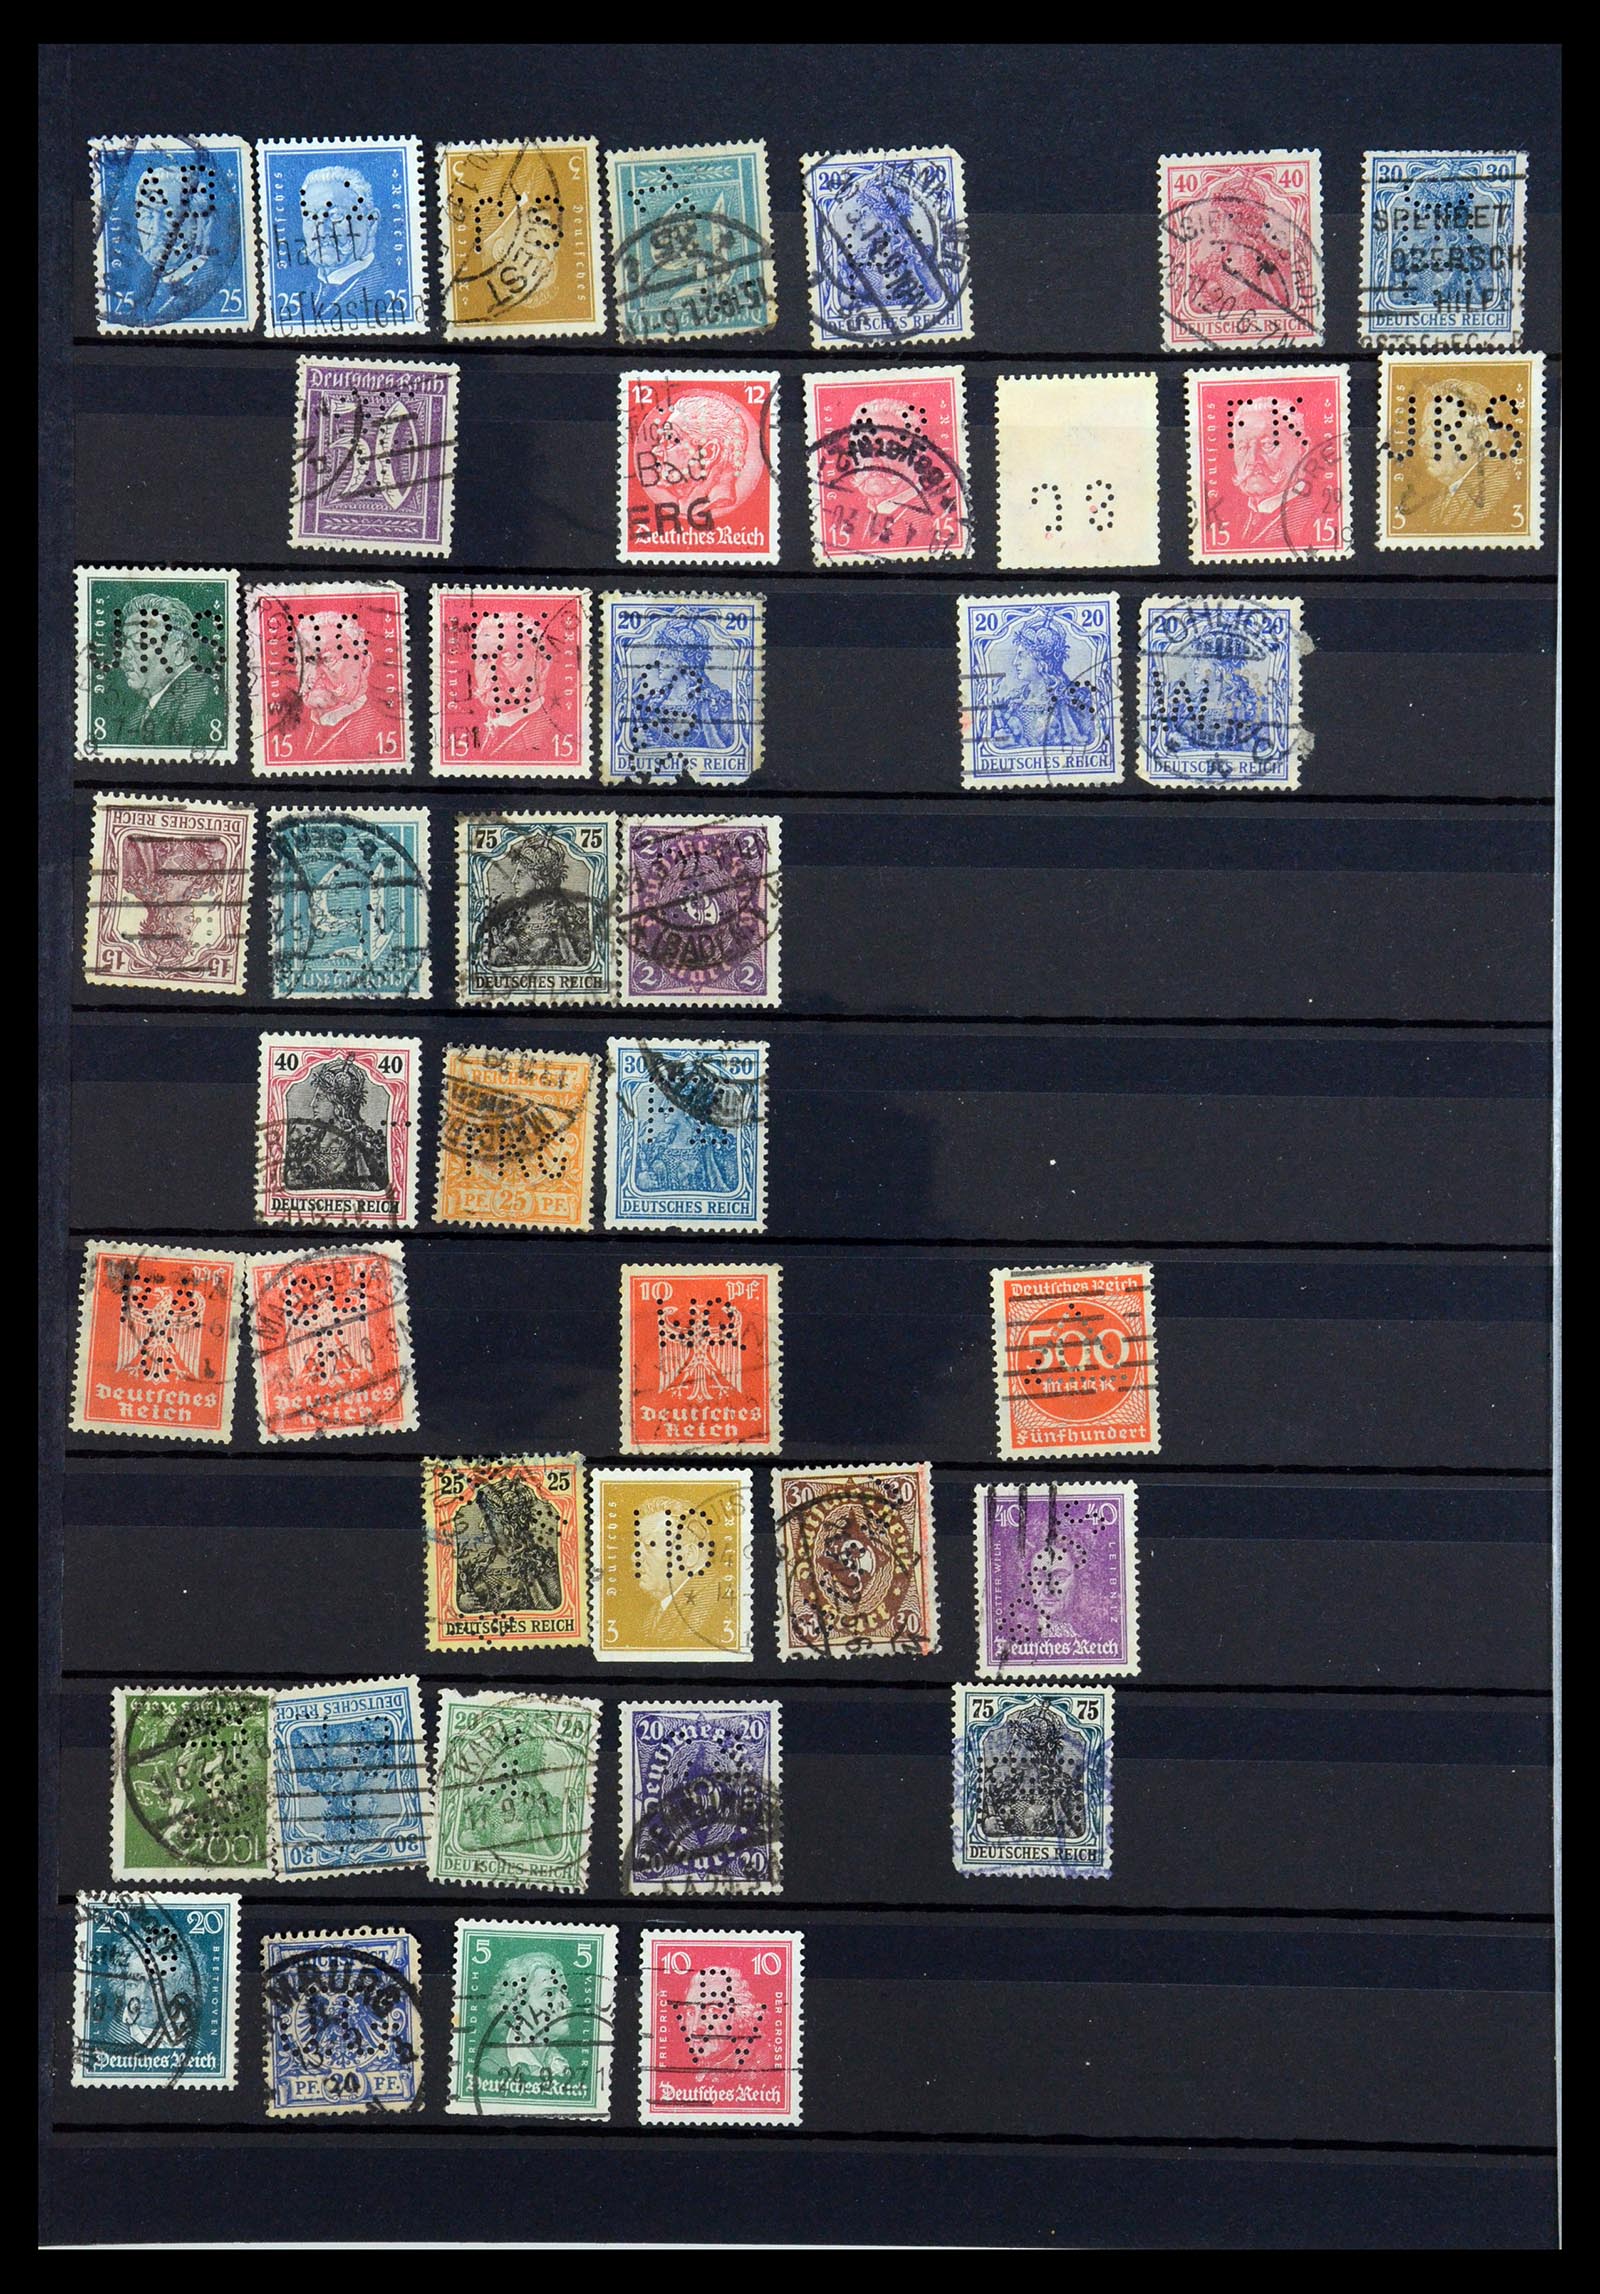 35183 036 - Stamp Collection 35183 German Reich perfins 1880-1945.